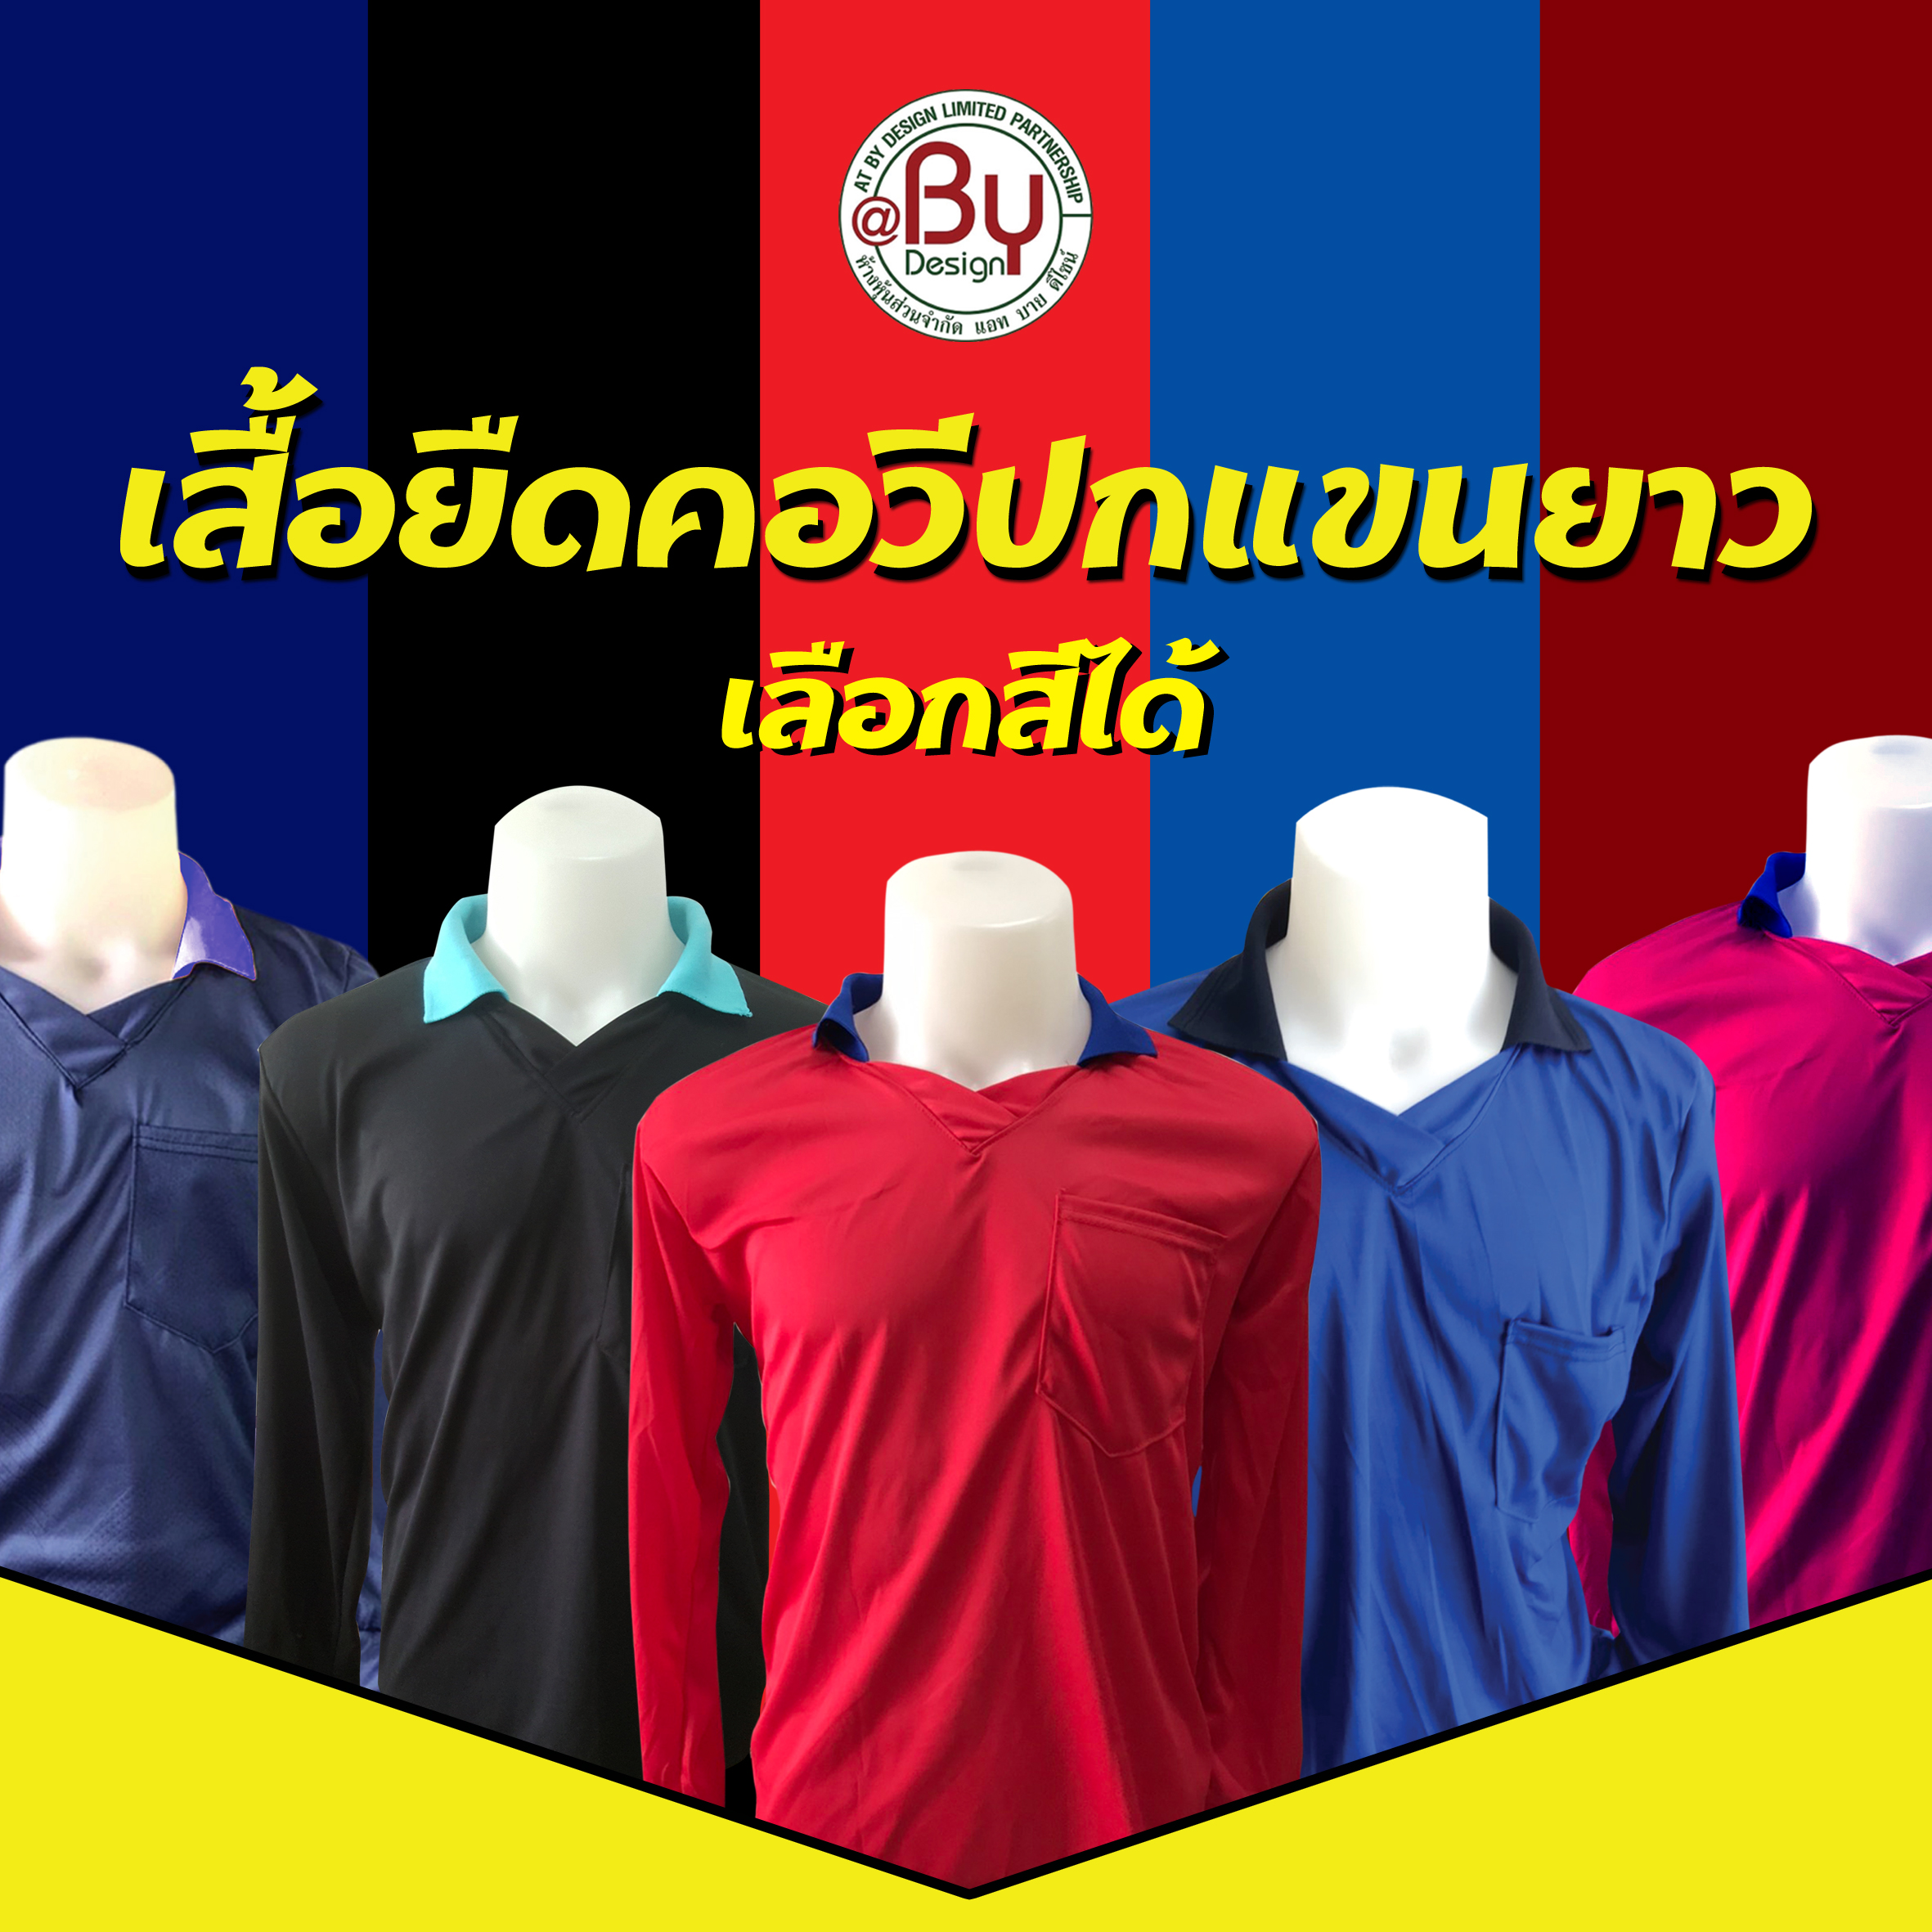 เสื้อคนงาน เสื้อทำงาน เสื้อยืดคนงานคอวีปก (เลือกสีได้-ฟรีไซต์) - (อก43